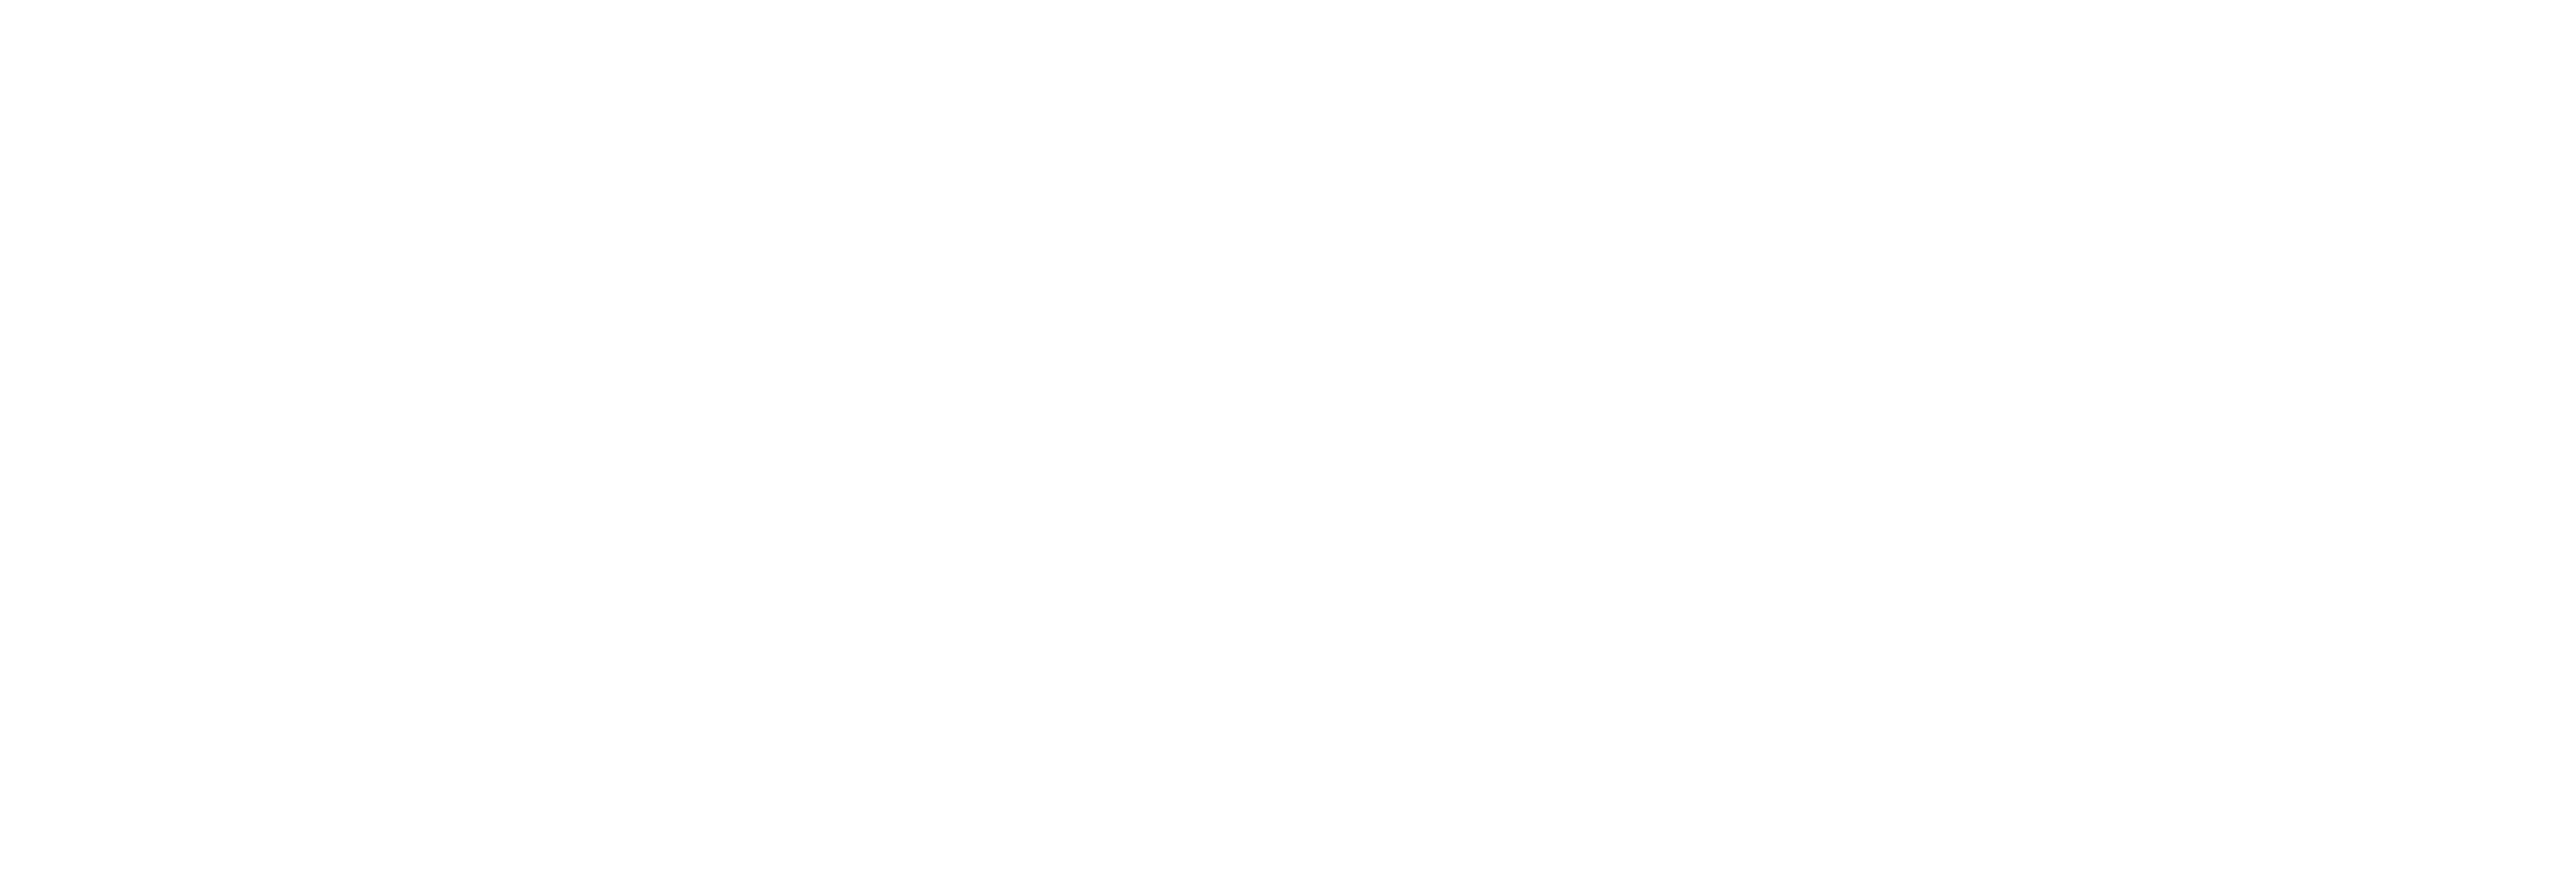 Clinica Veterinaria NSL logo